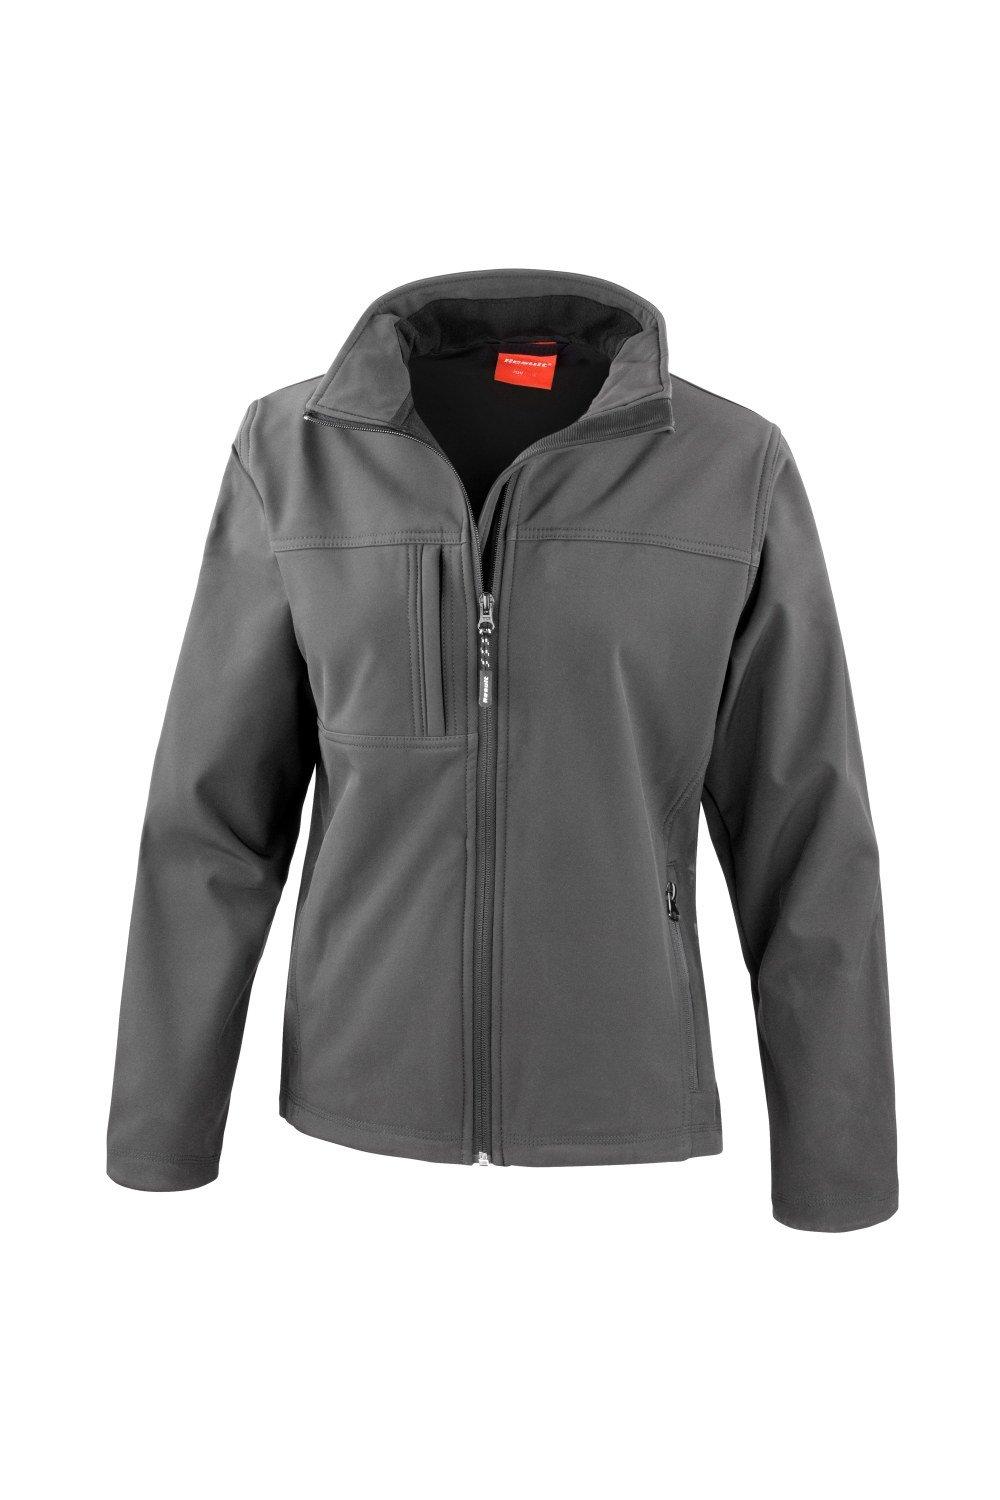 3-слойная куртка Softshell Premium (водонепроницаемая, ветрозащитная и дышащая) Result, серый